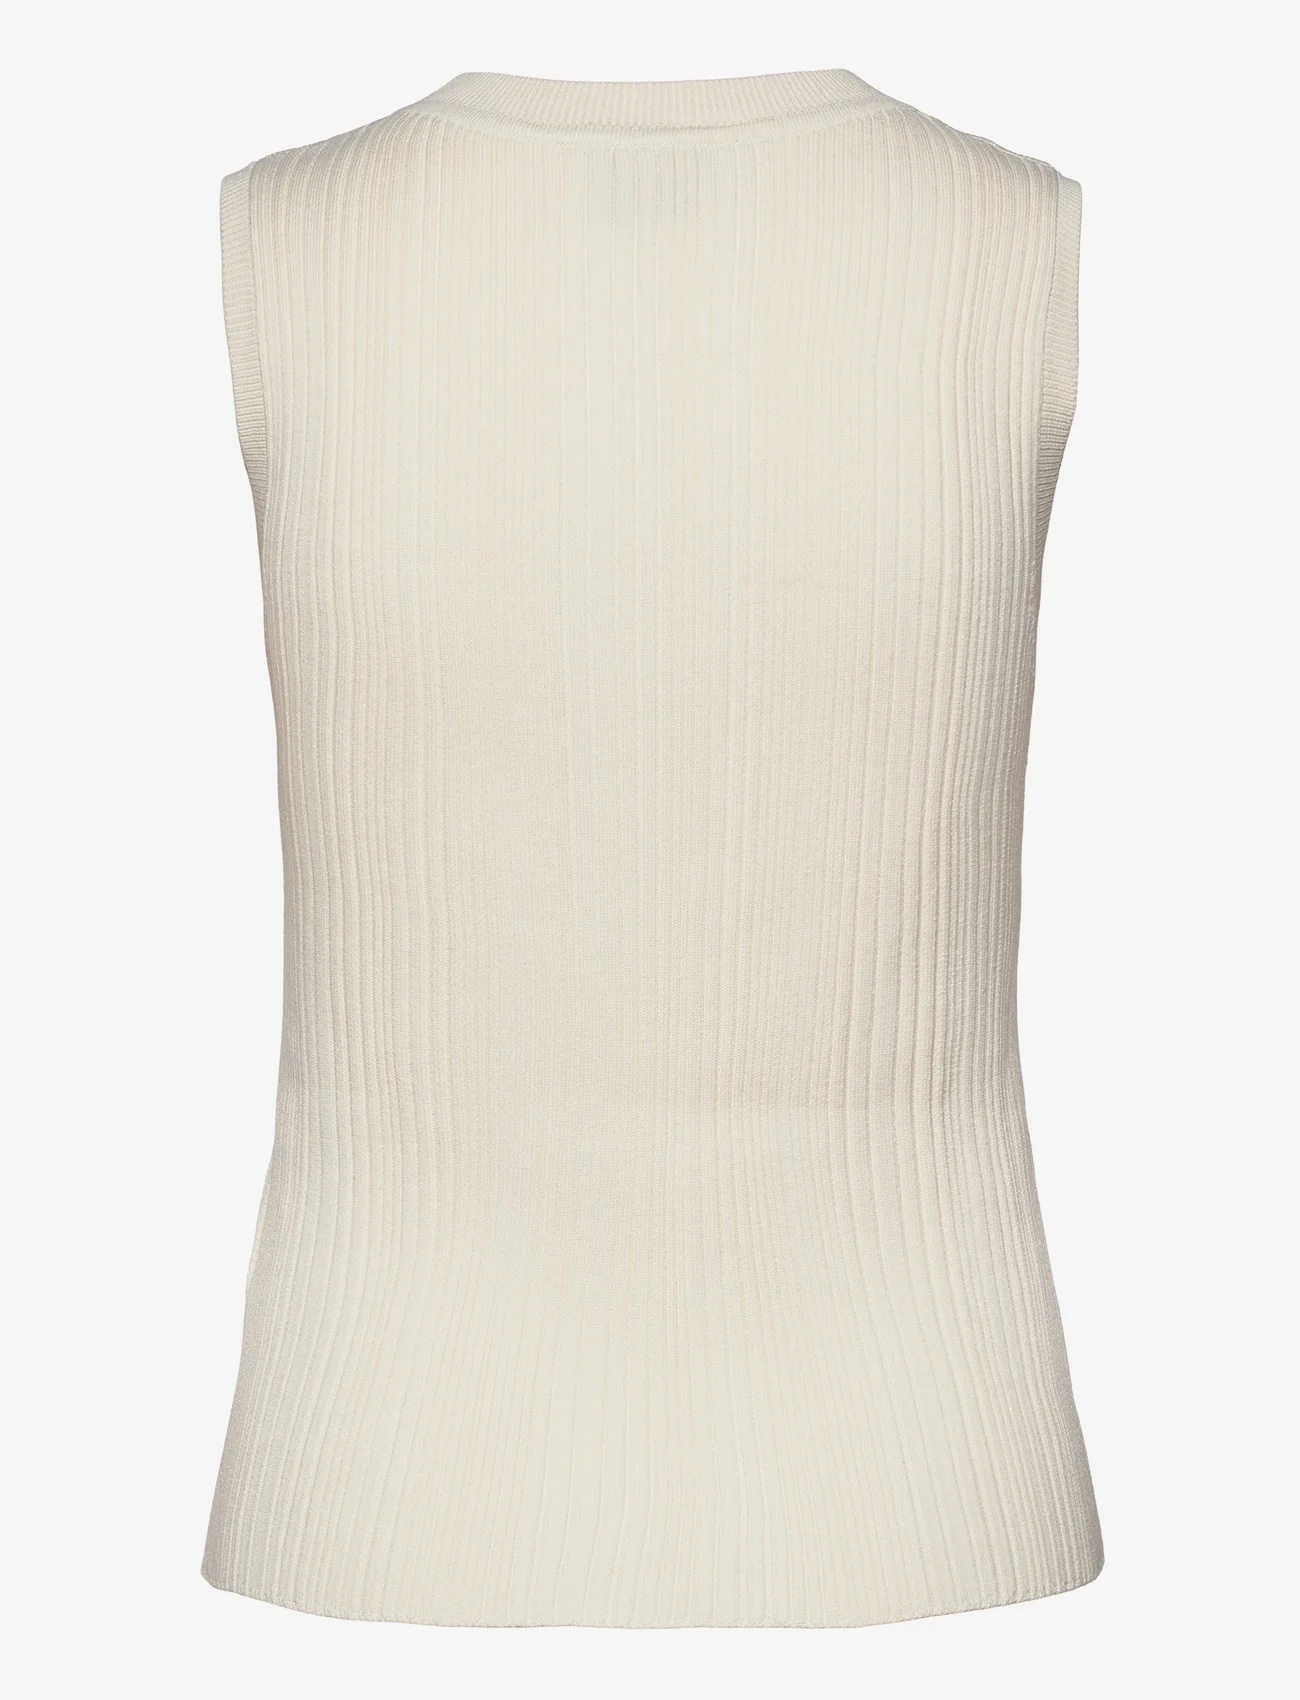 BOSS - Felishia - knitted vests - open white - 1